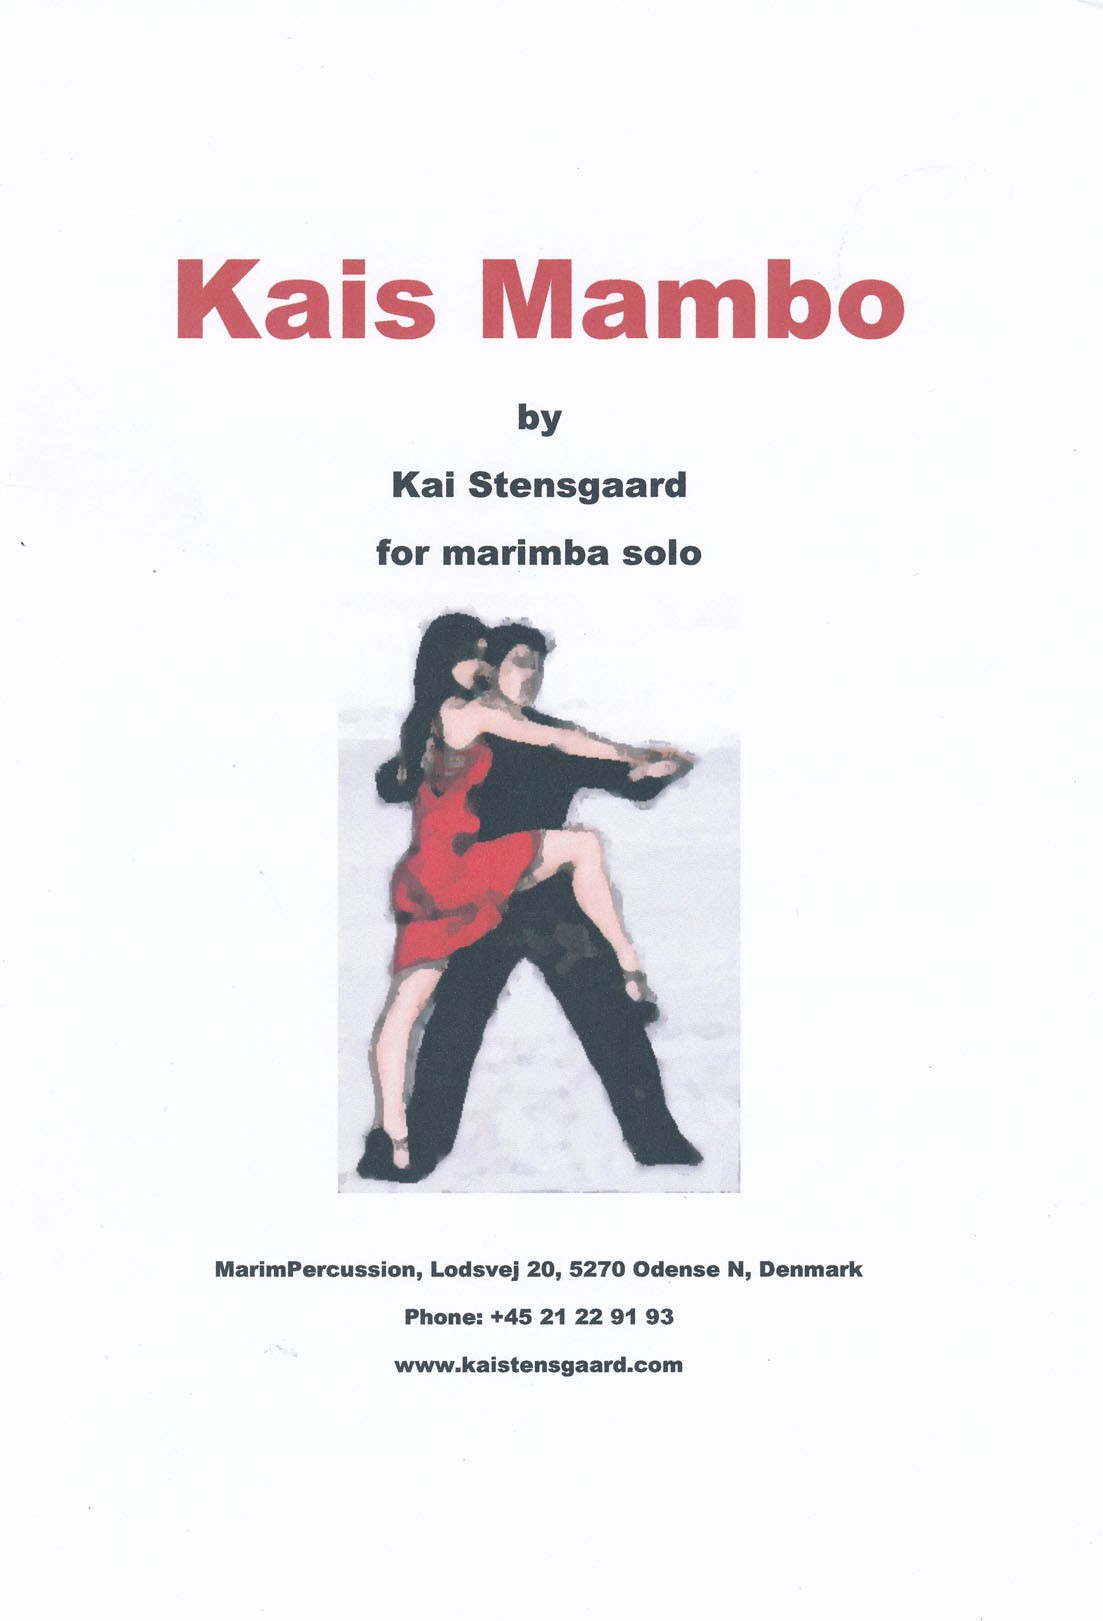 Kais Mambo by Kai Stensgaard